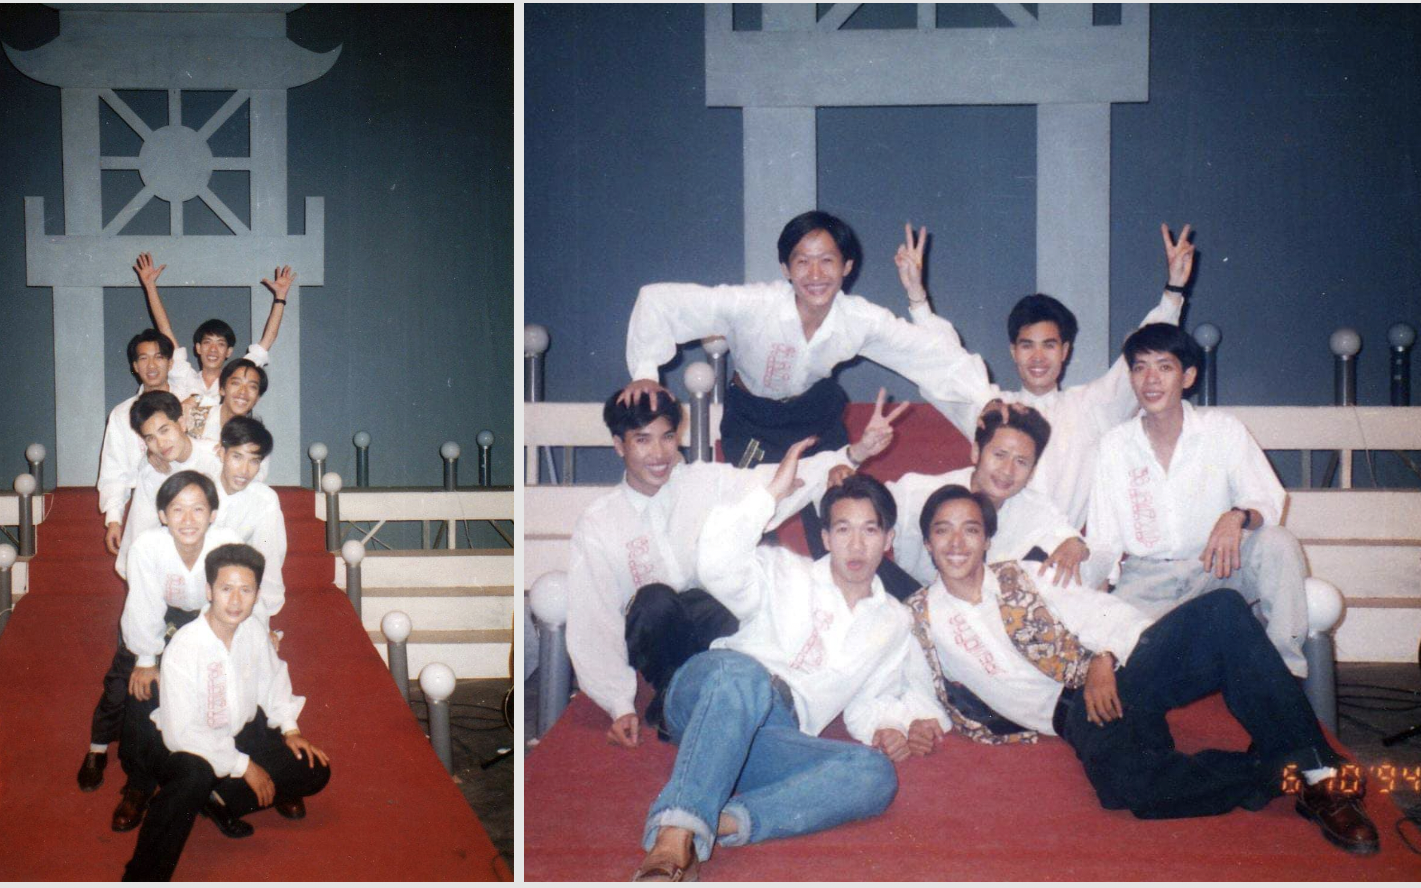 Nhạc sĩ Xuân Phương qua đời, Bằng Kiều chia sẻ loạt ảnh hiếm hoi thời ban nhạc "Chìa khoá vàng" 1994